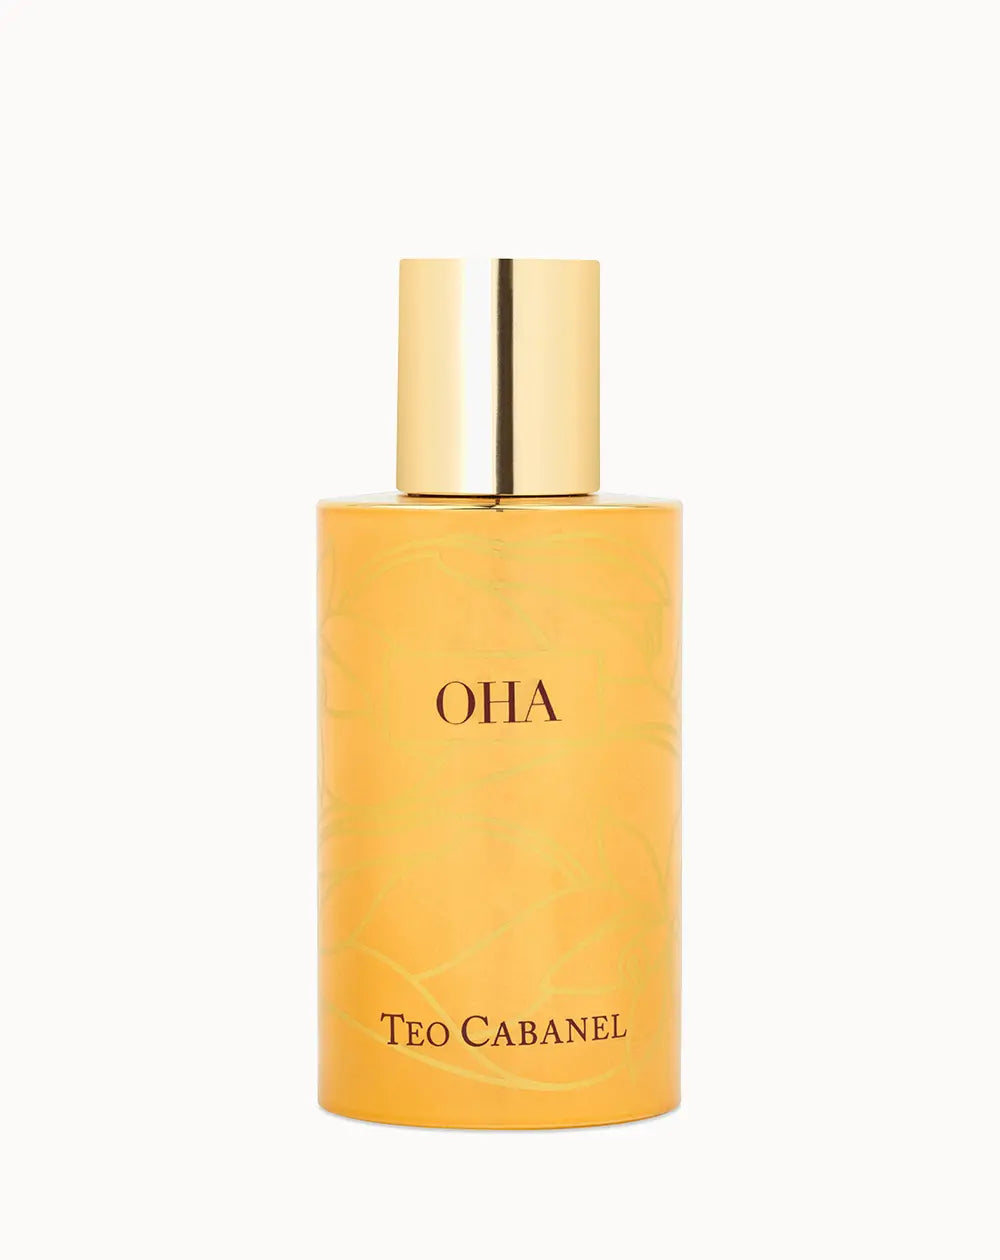 Oh La La Eau De Parfum by Teo Cabanel Samples Choose 2 Ml 